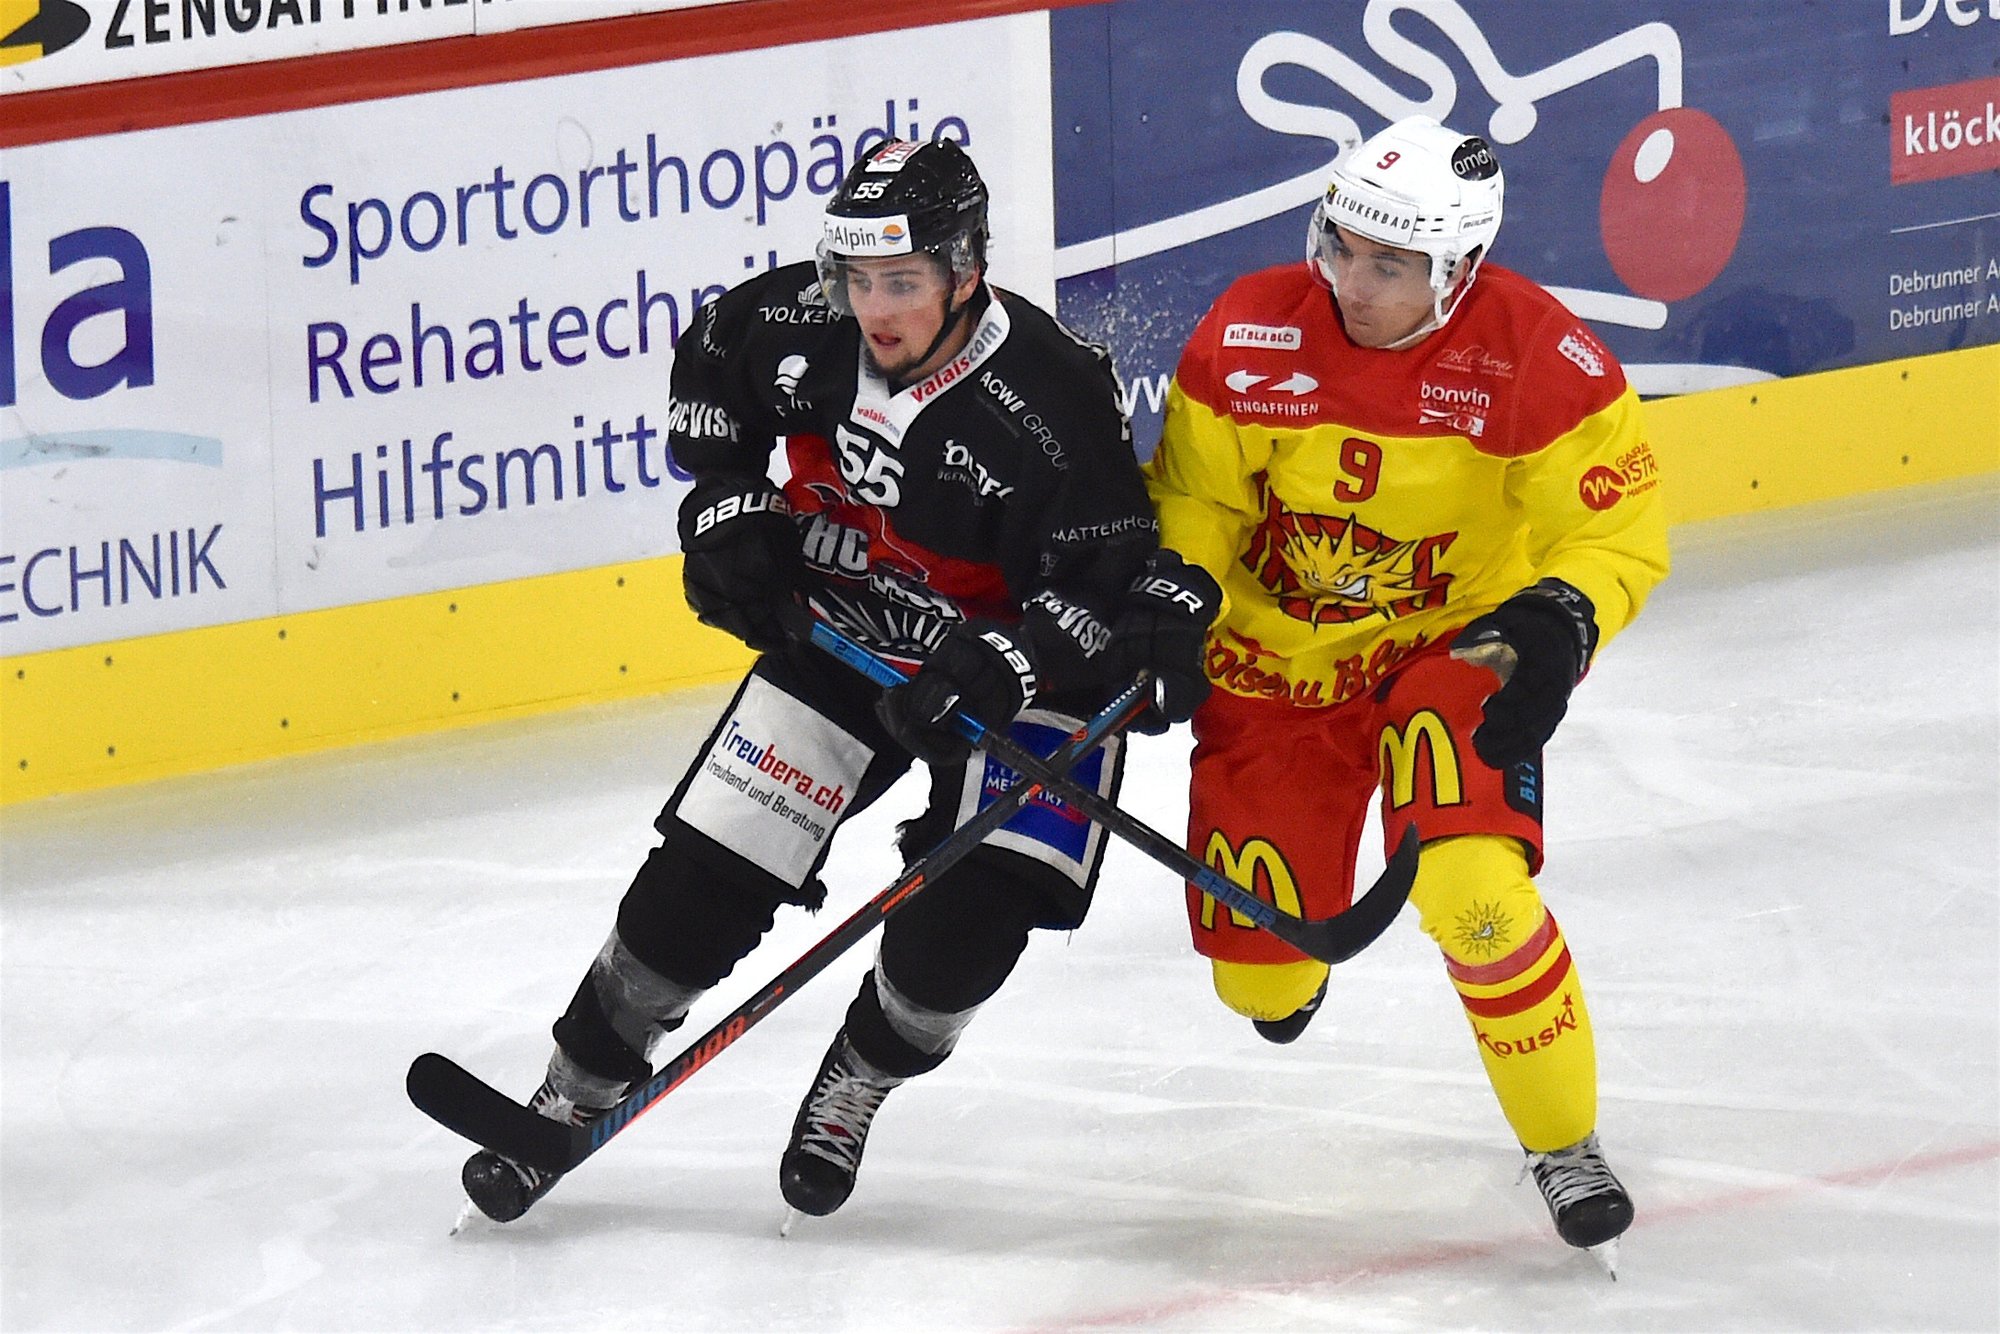 La dernière victoire du HC Sierre dans le temps réglementaire remonte au 18 septembre 2019 à Viège. Depuis, il n'a gagné qu'un match en prolongation à La Chaux-de-Fonds.